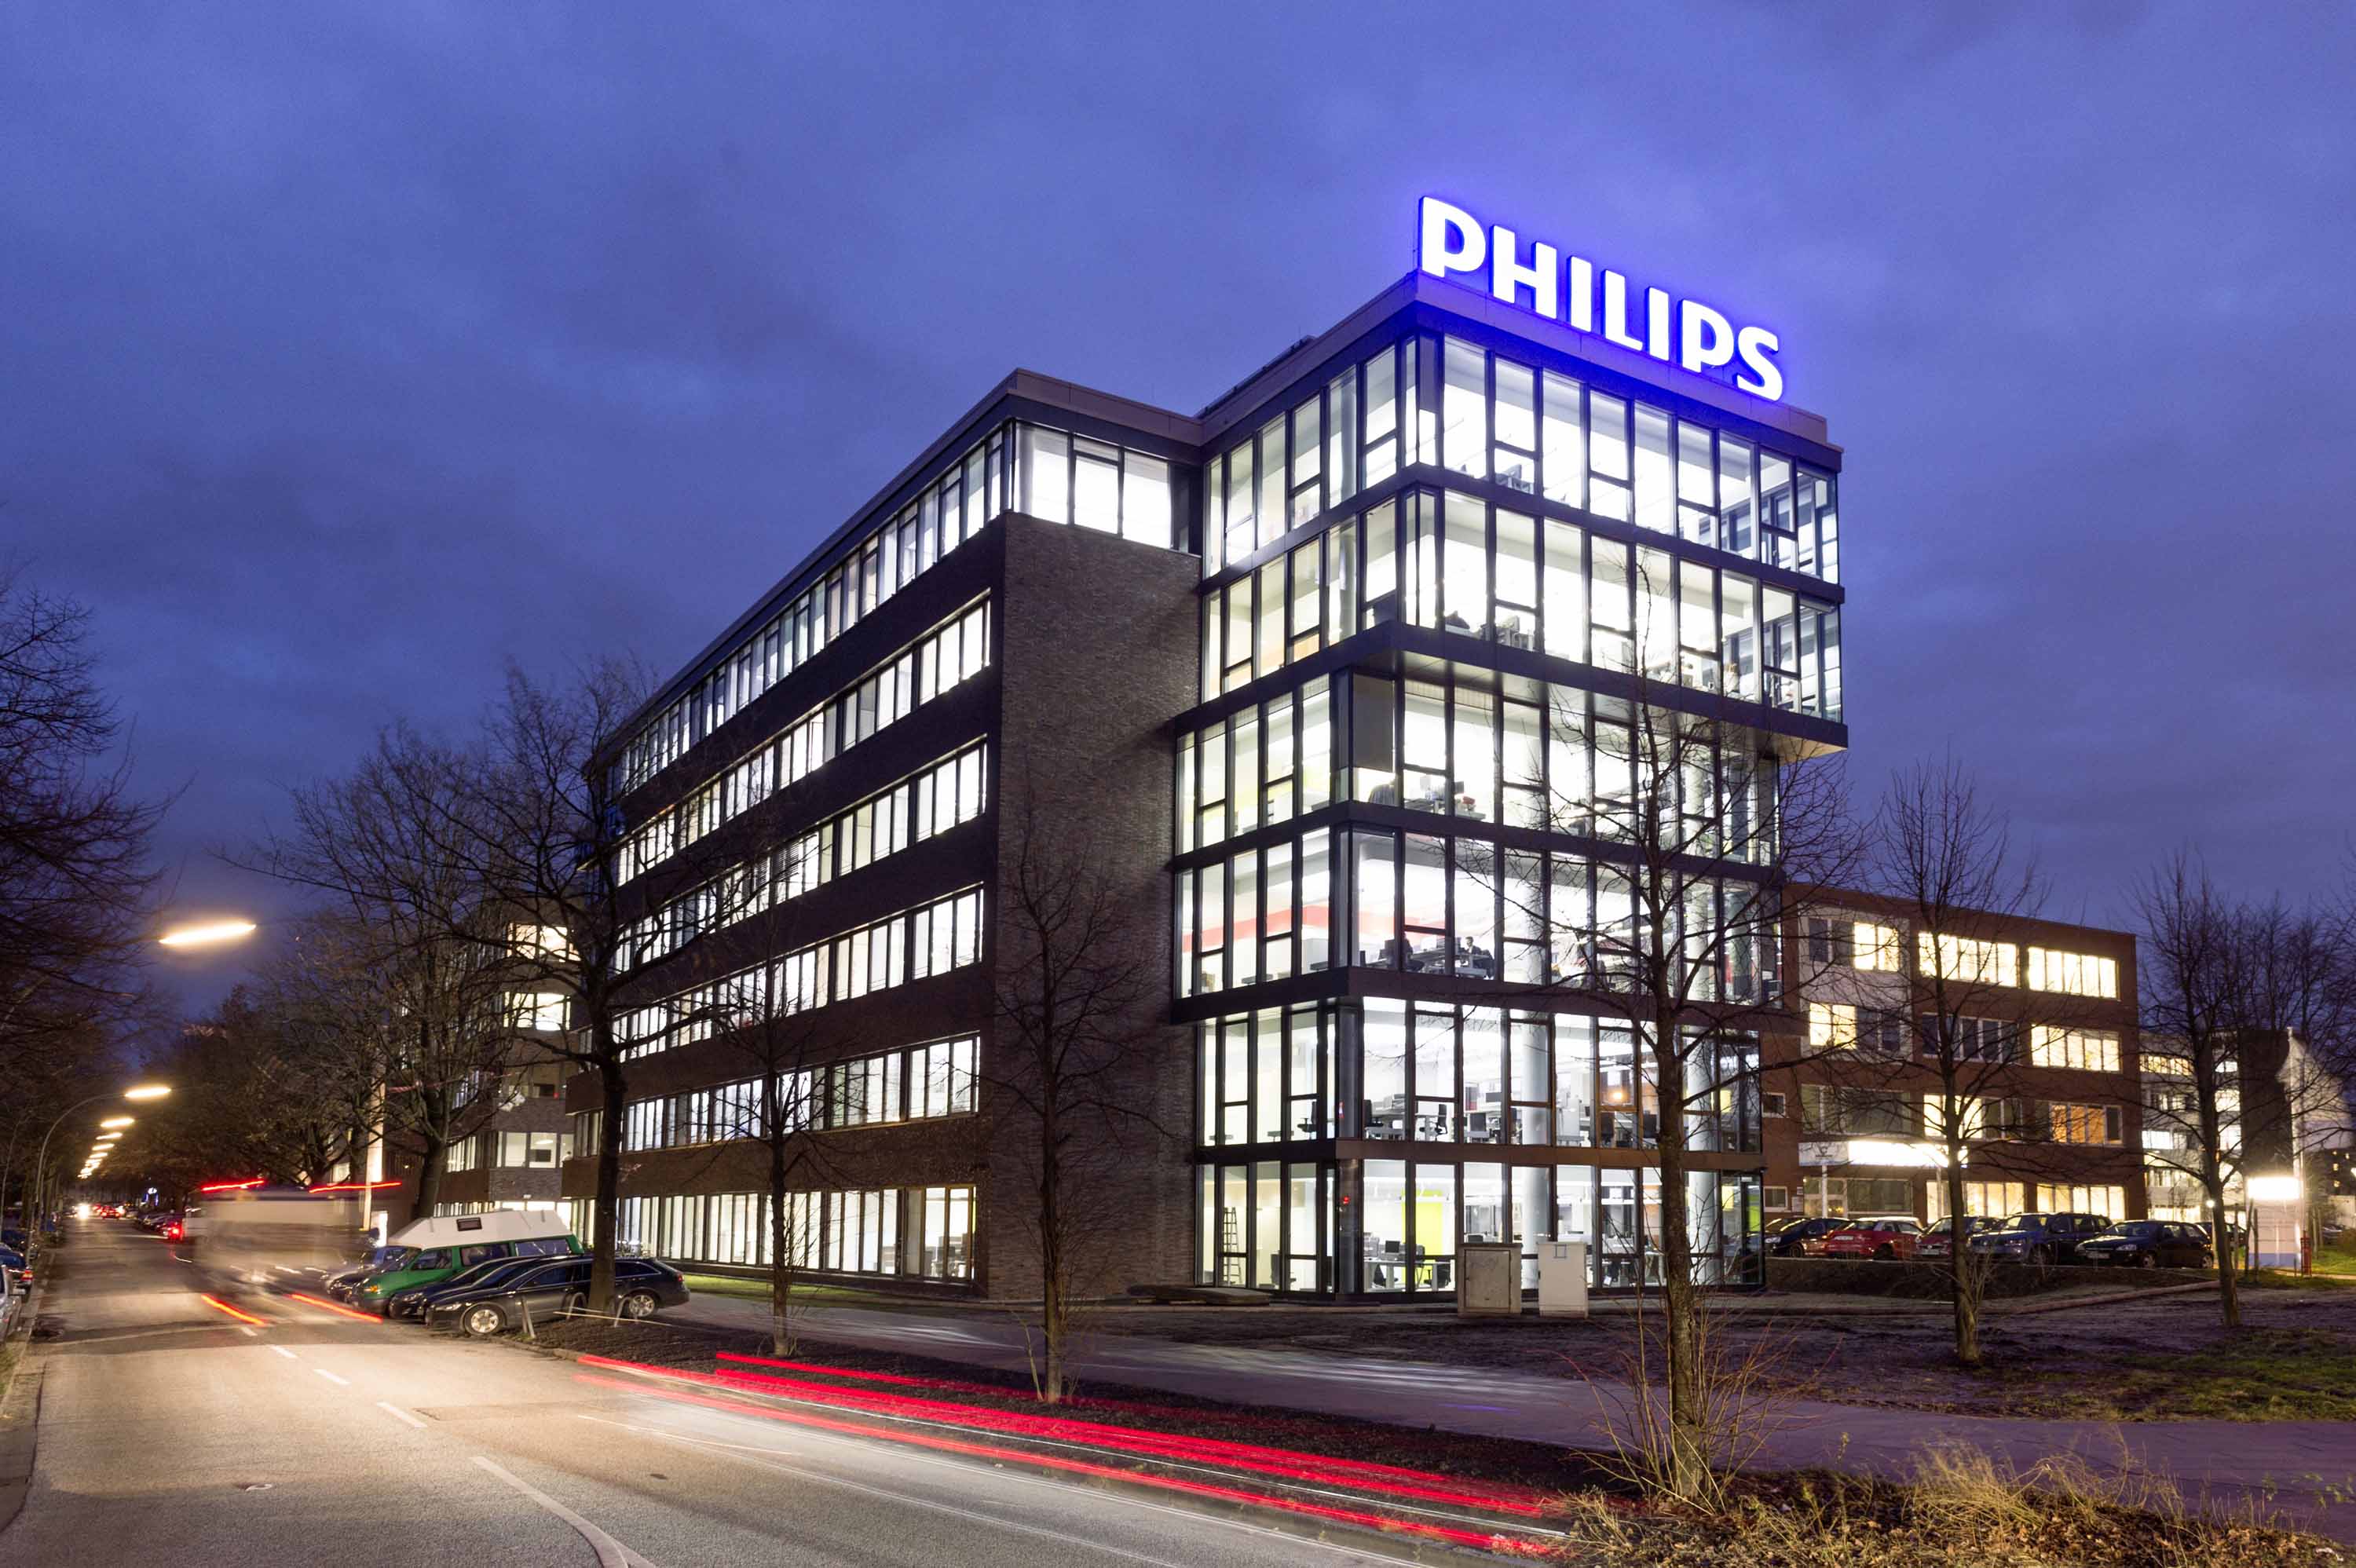 Филипс г. Филипс Нидерланды. Штаб квартира Филипс. Philips Эйндховен. Филипс в Амстердаме.